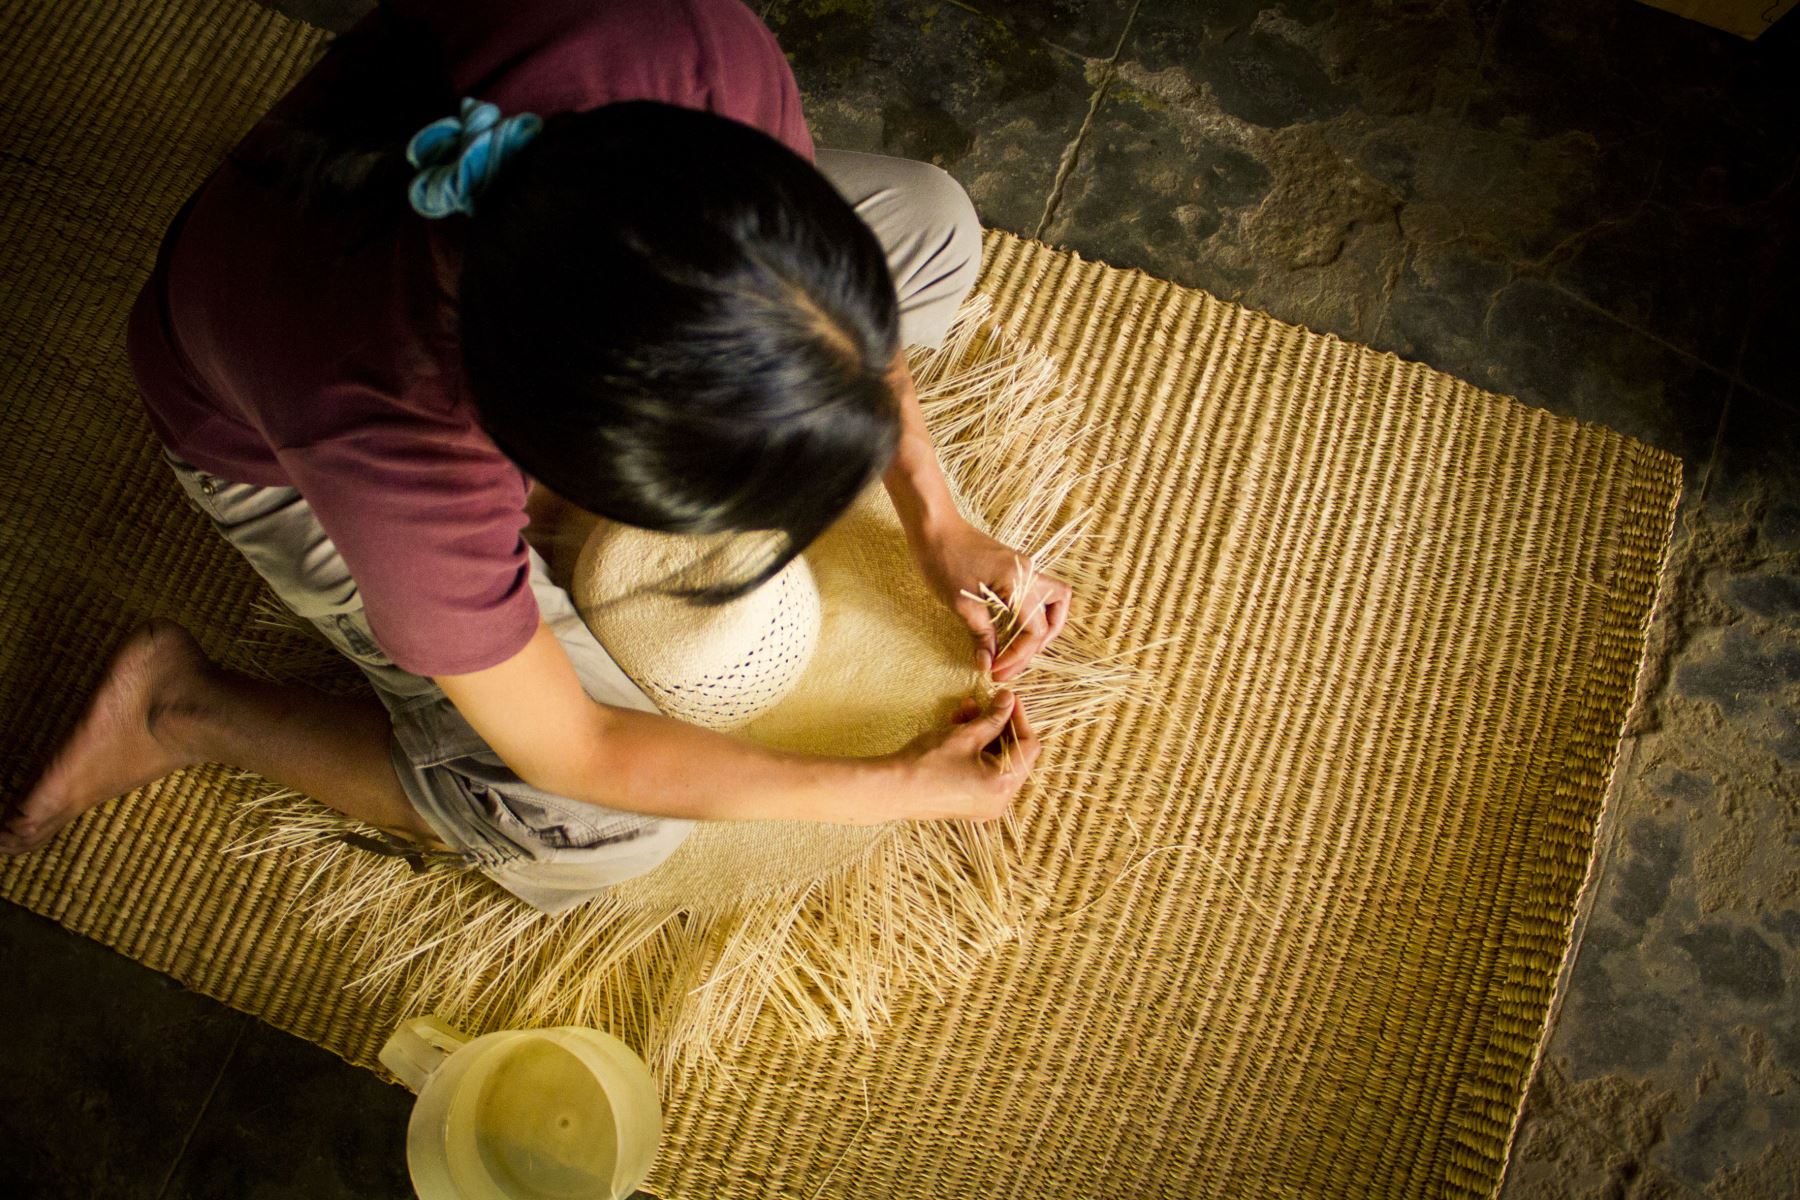 Localidad artesanal de Catacaos en Piura.
Foto: Mincetur